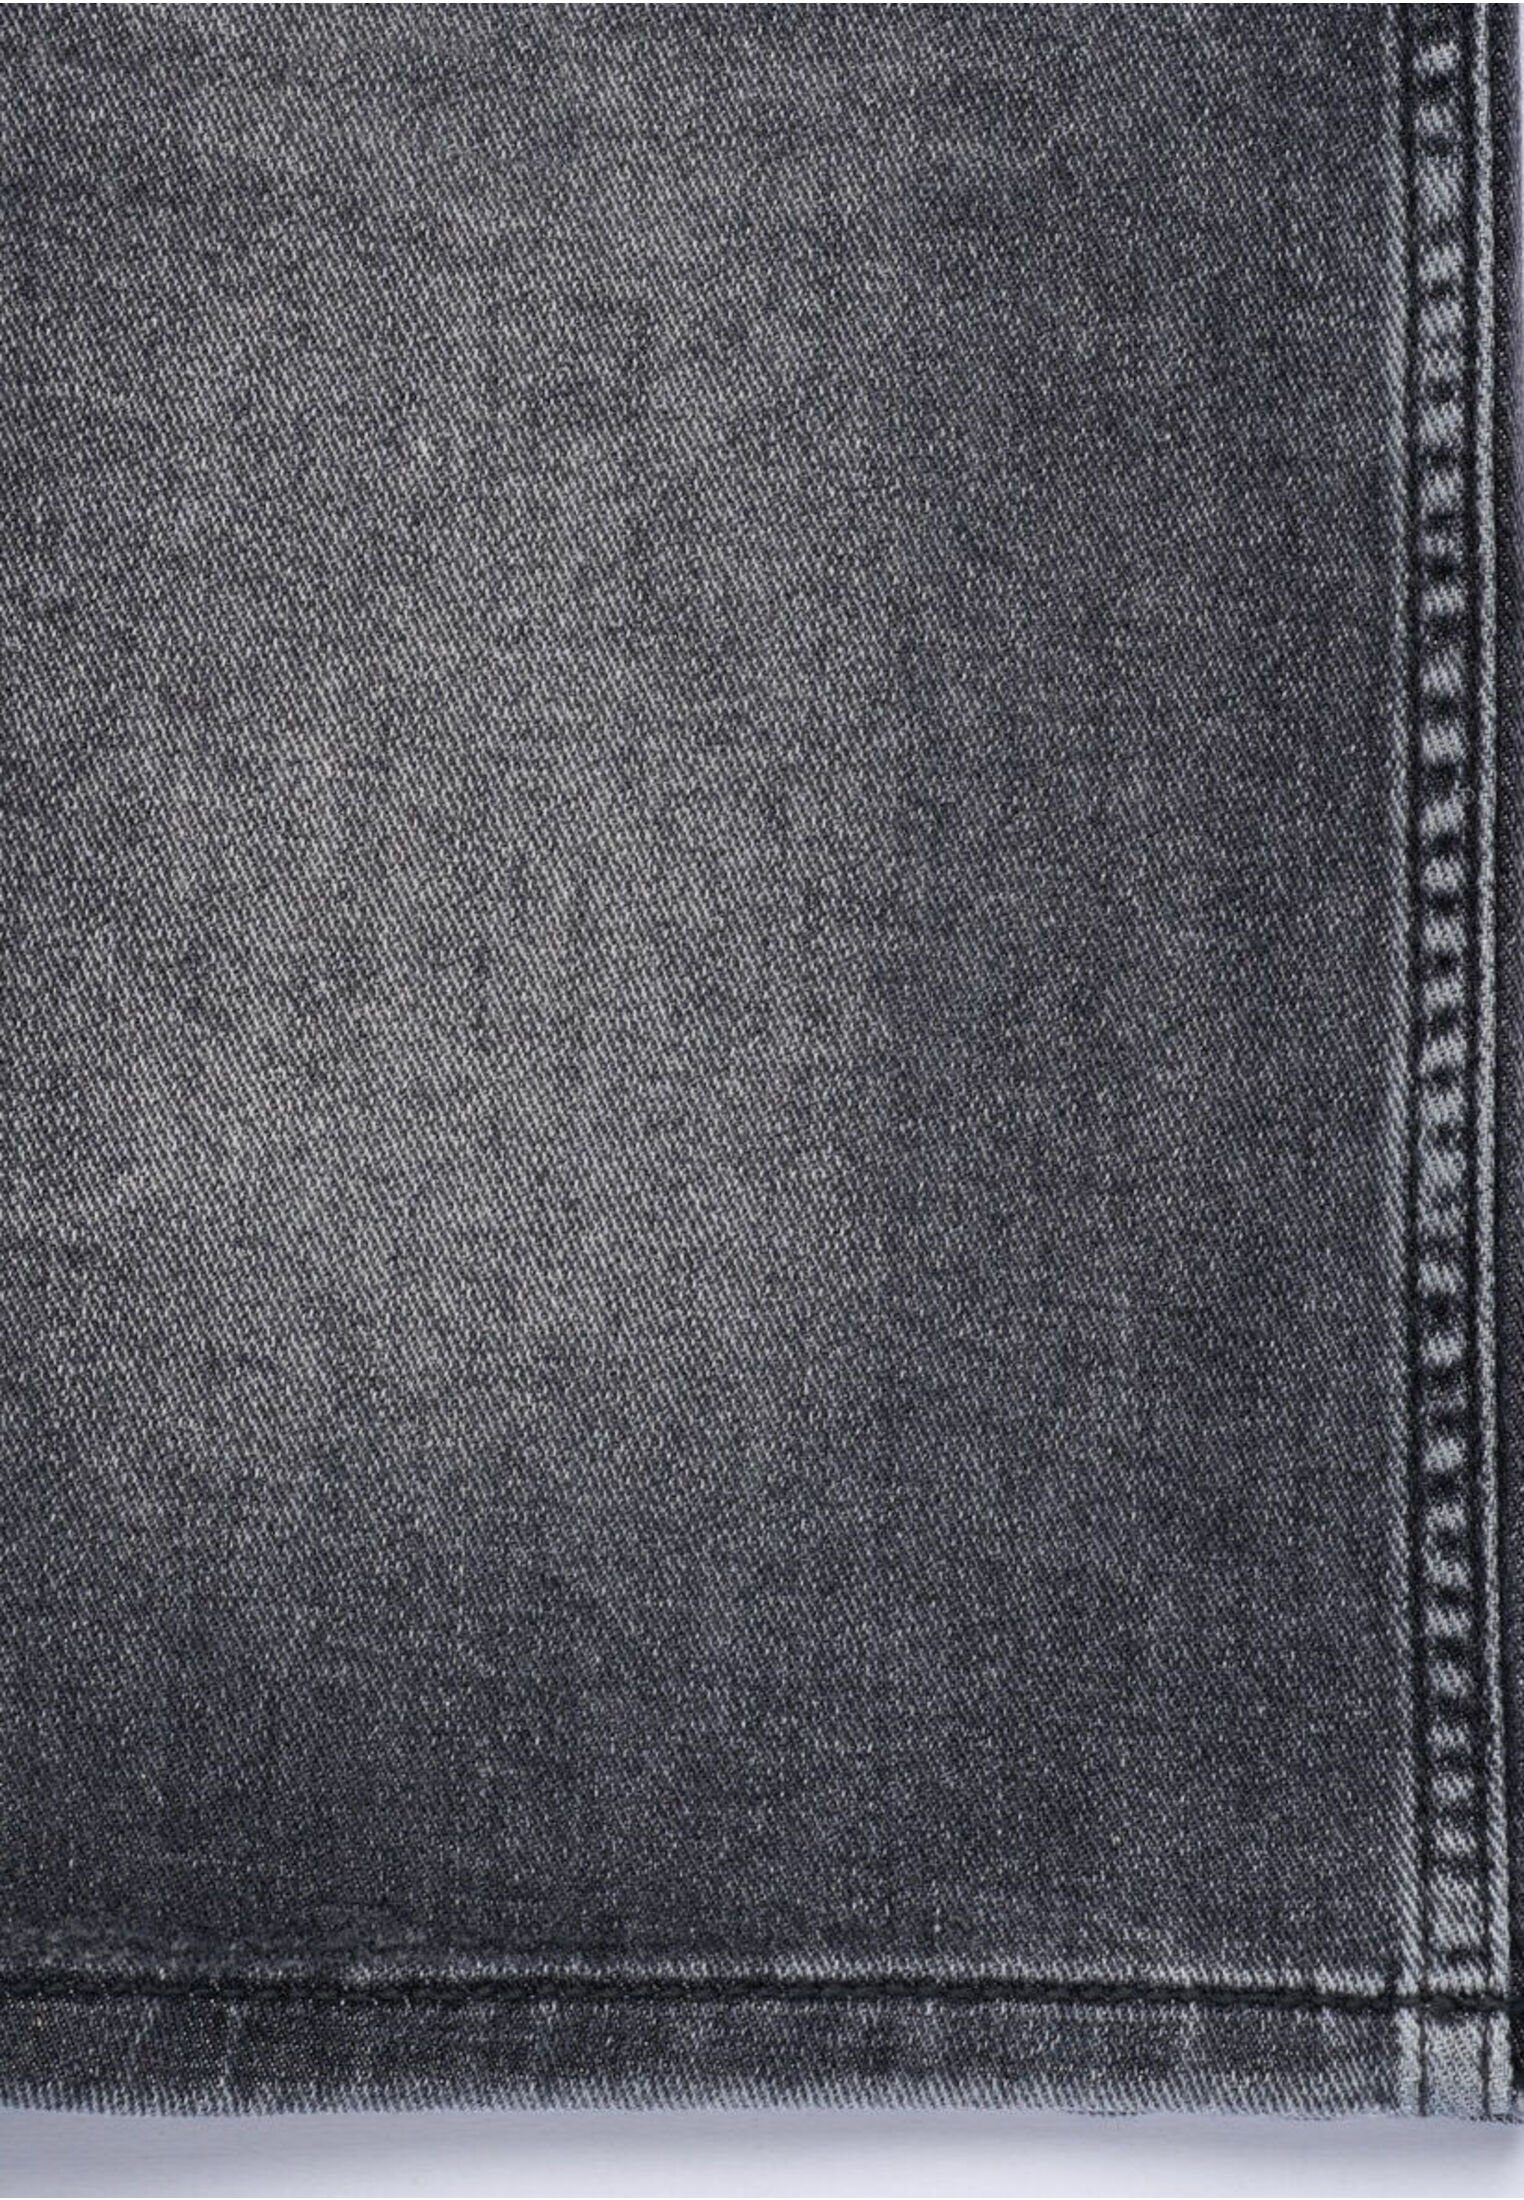 bugatti 5-Pocket-Jeans besonders weicher Haptik mit hellgrau